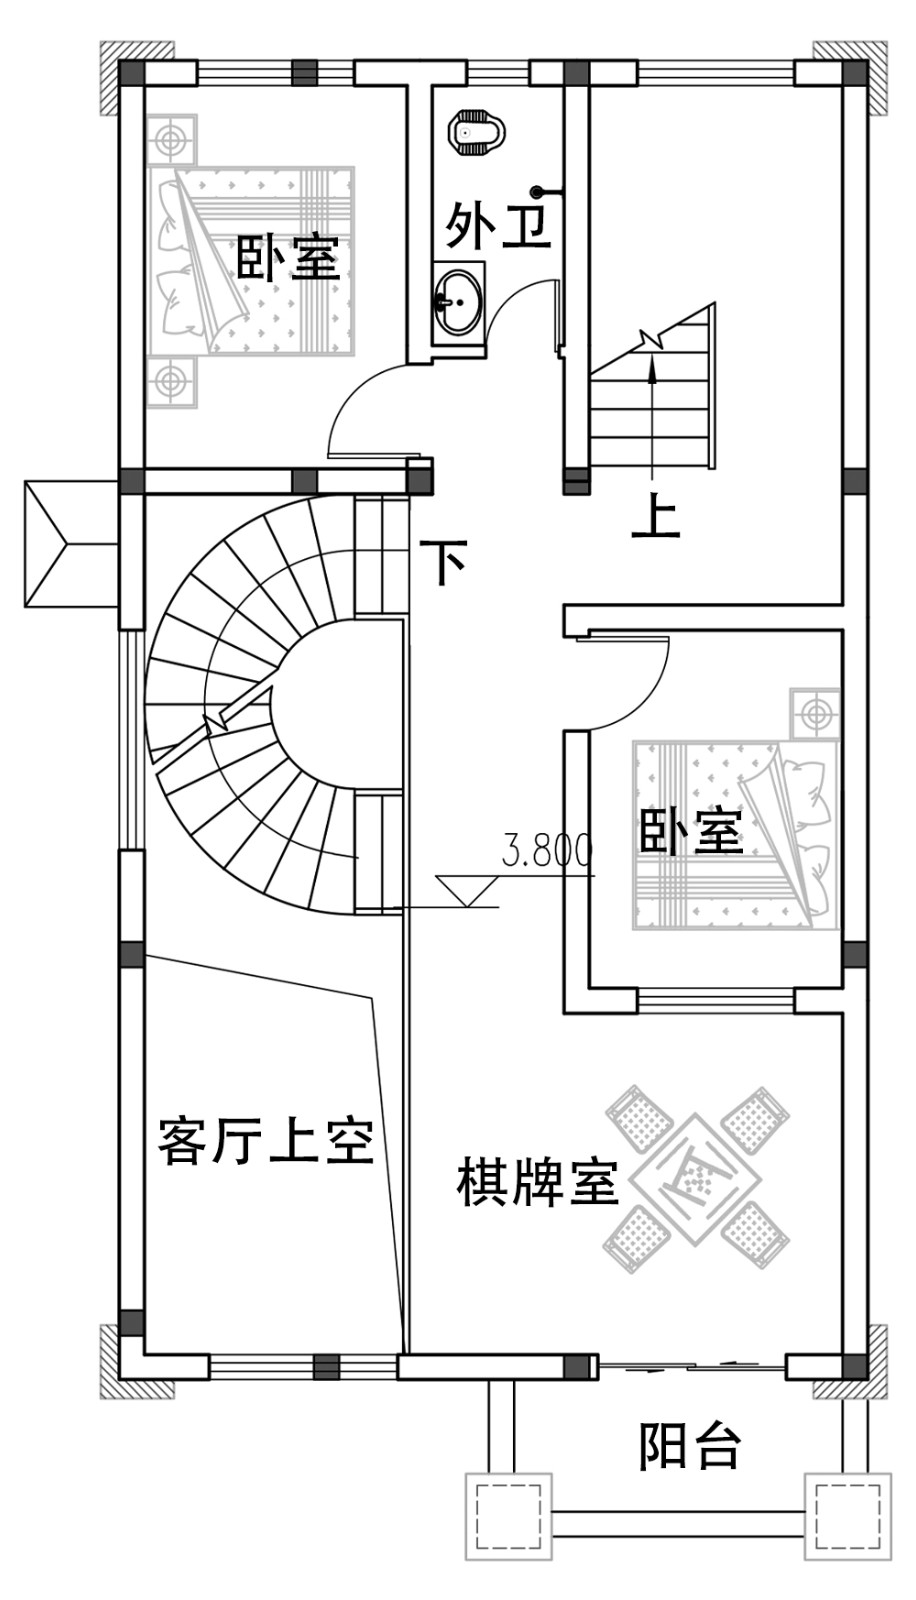 14米x7米的房子设计图图片